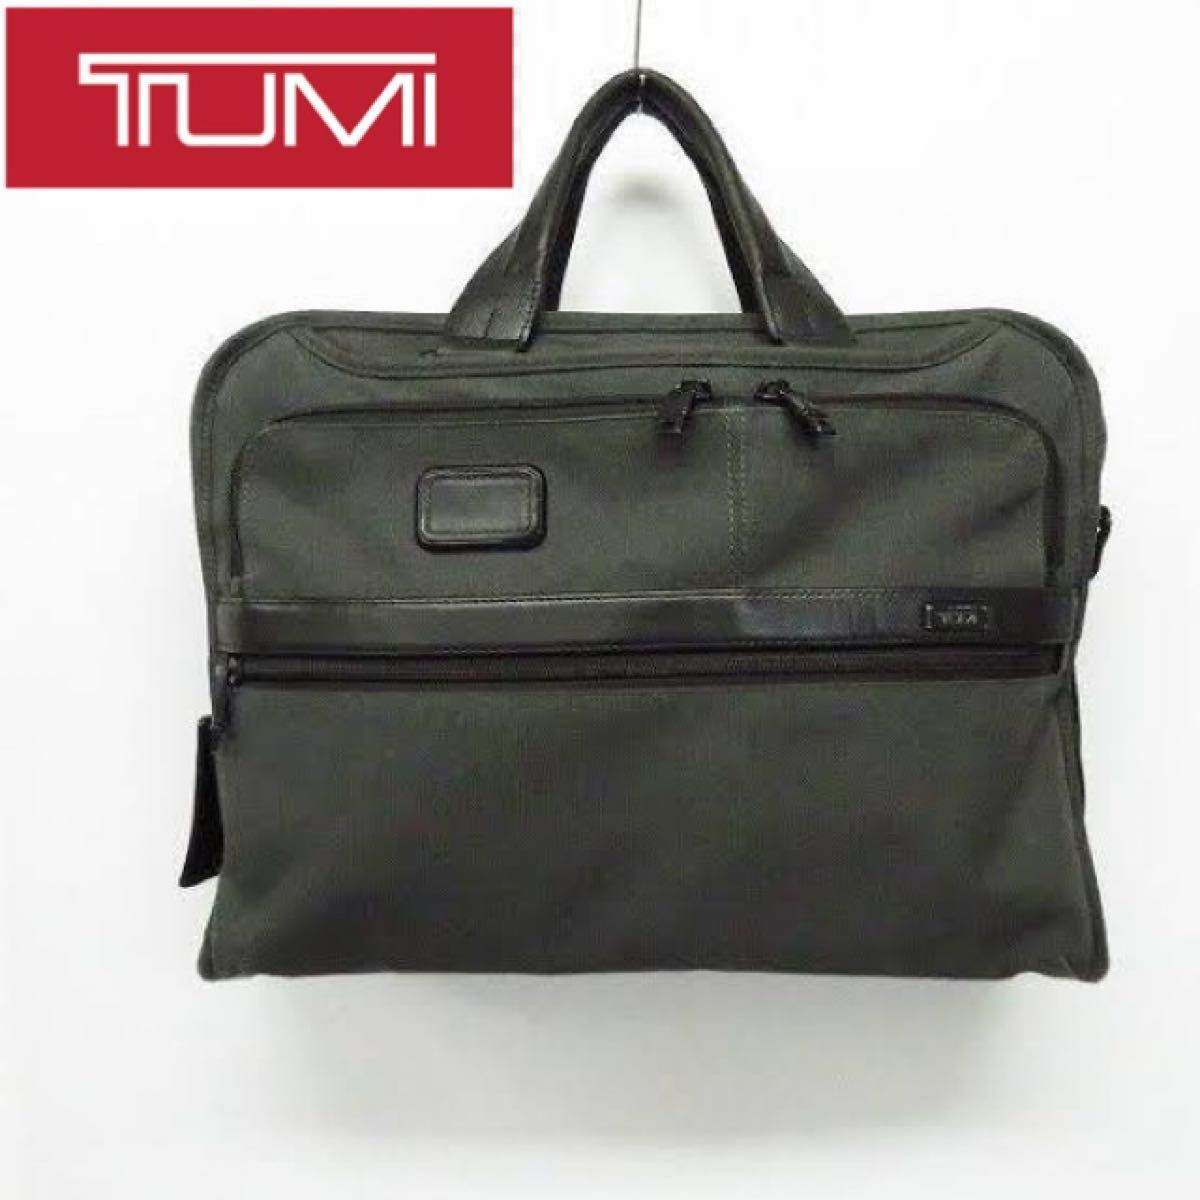 TUMI/トゥミ アルファ2オーガナイザー ポートフォリオブリーフ ビジネスA4 TUMI